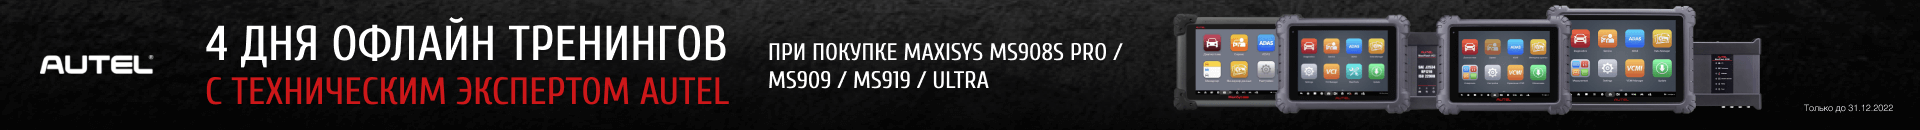 При покупке автосканеров экспертного уровня MaxiSys MS908S PRO, MS909, MS919, Ultra бесплатно в комплекте с прибором поставляются сертификаты на бесплатное обучение в учебной лаборатории.